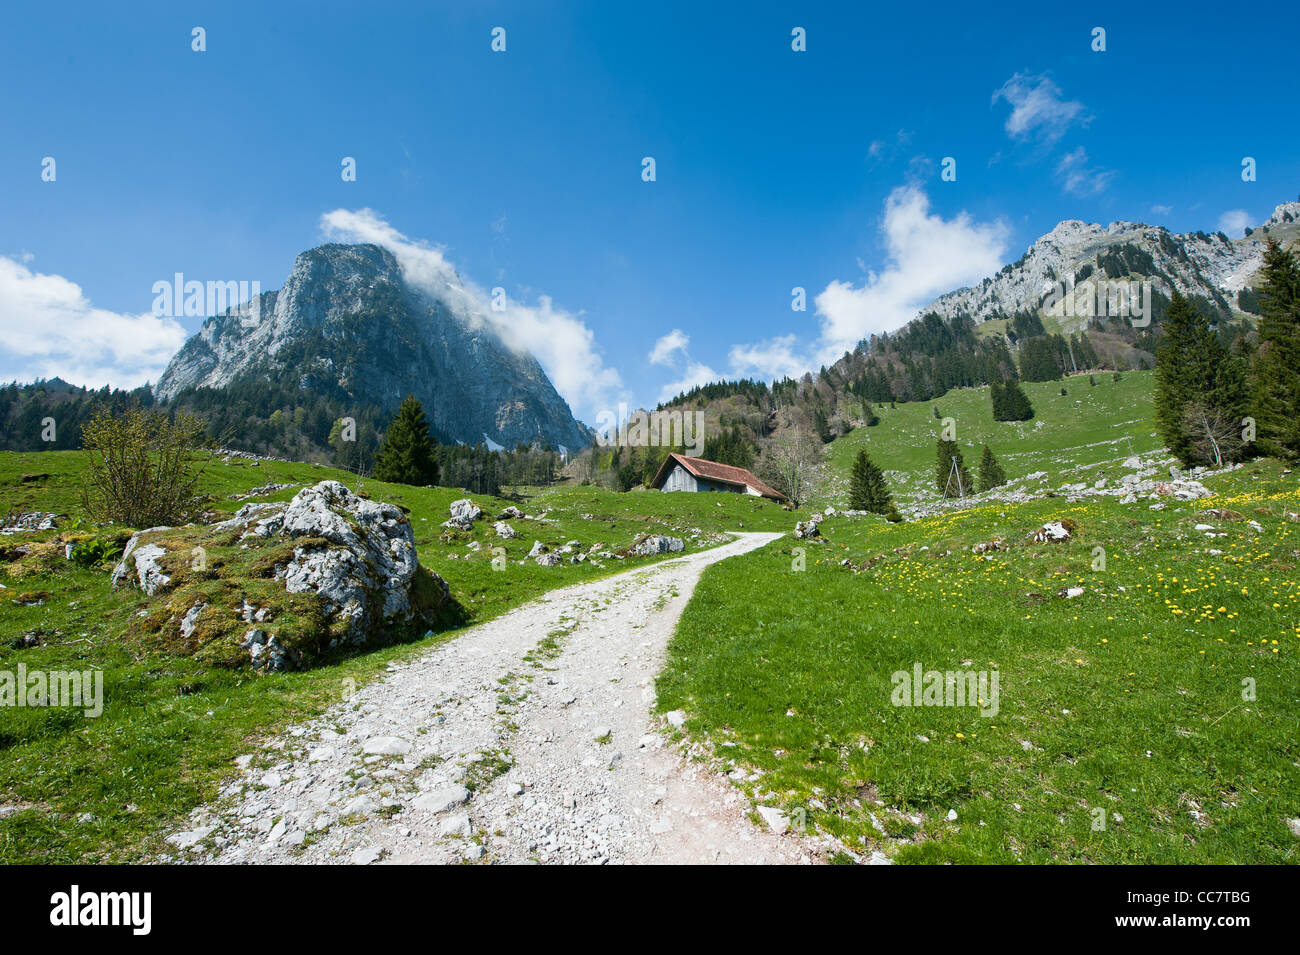 Vue panoramique de Grosser Mythen pic de montagne près de Brunni, Suisse Banque D'Images